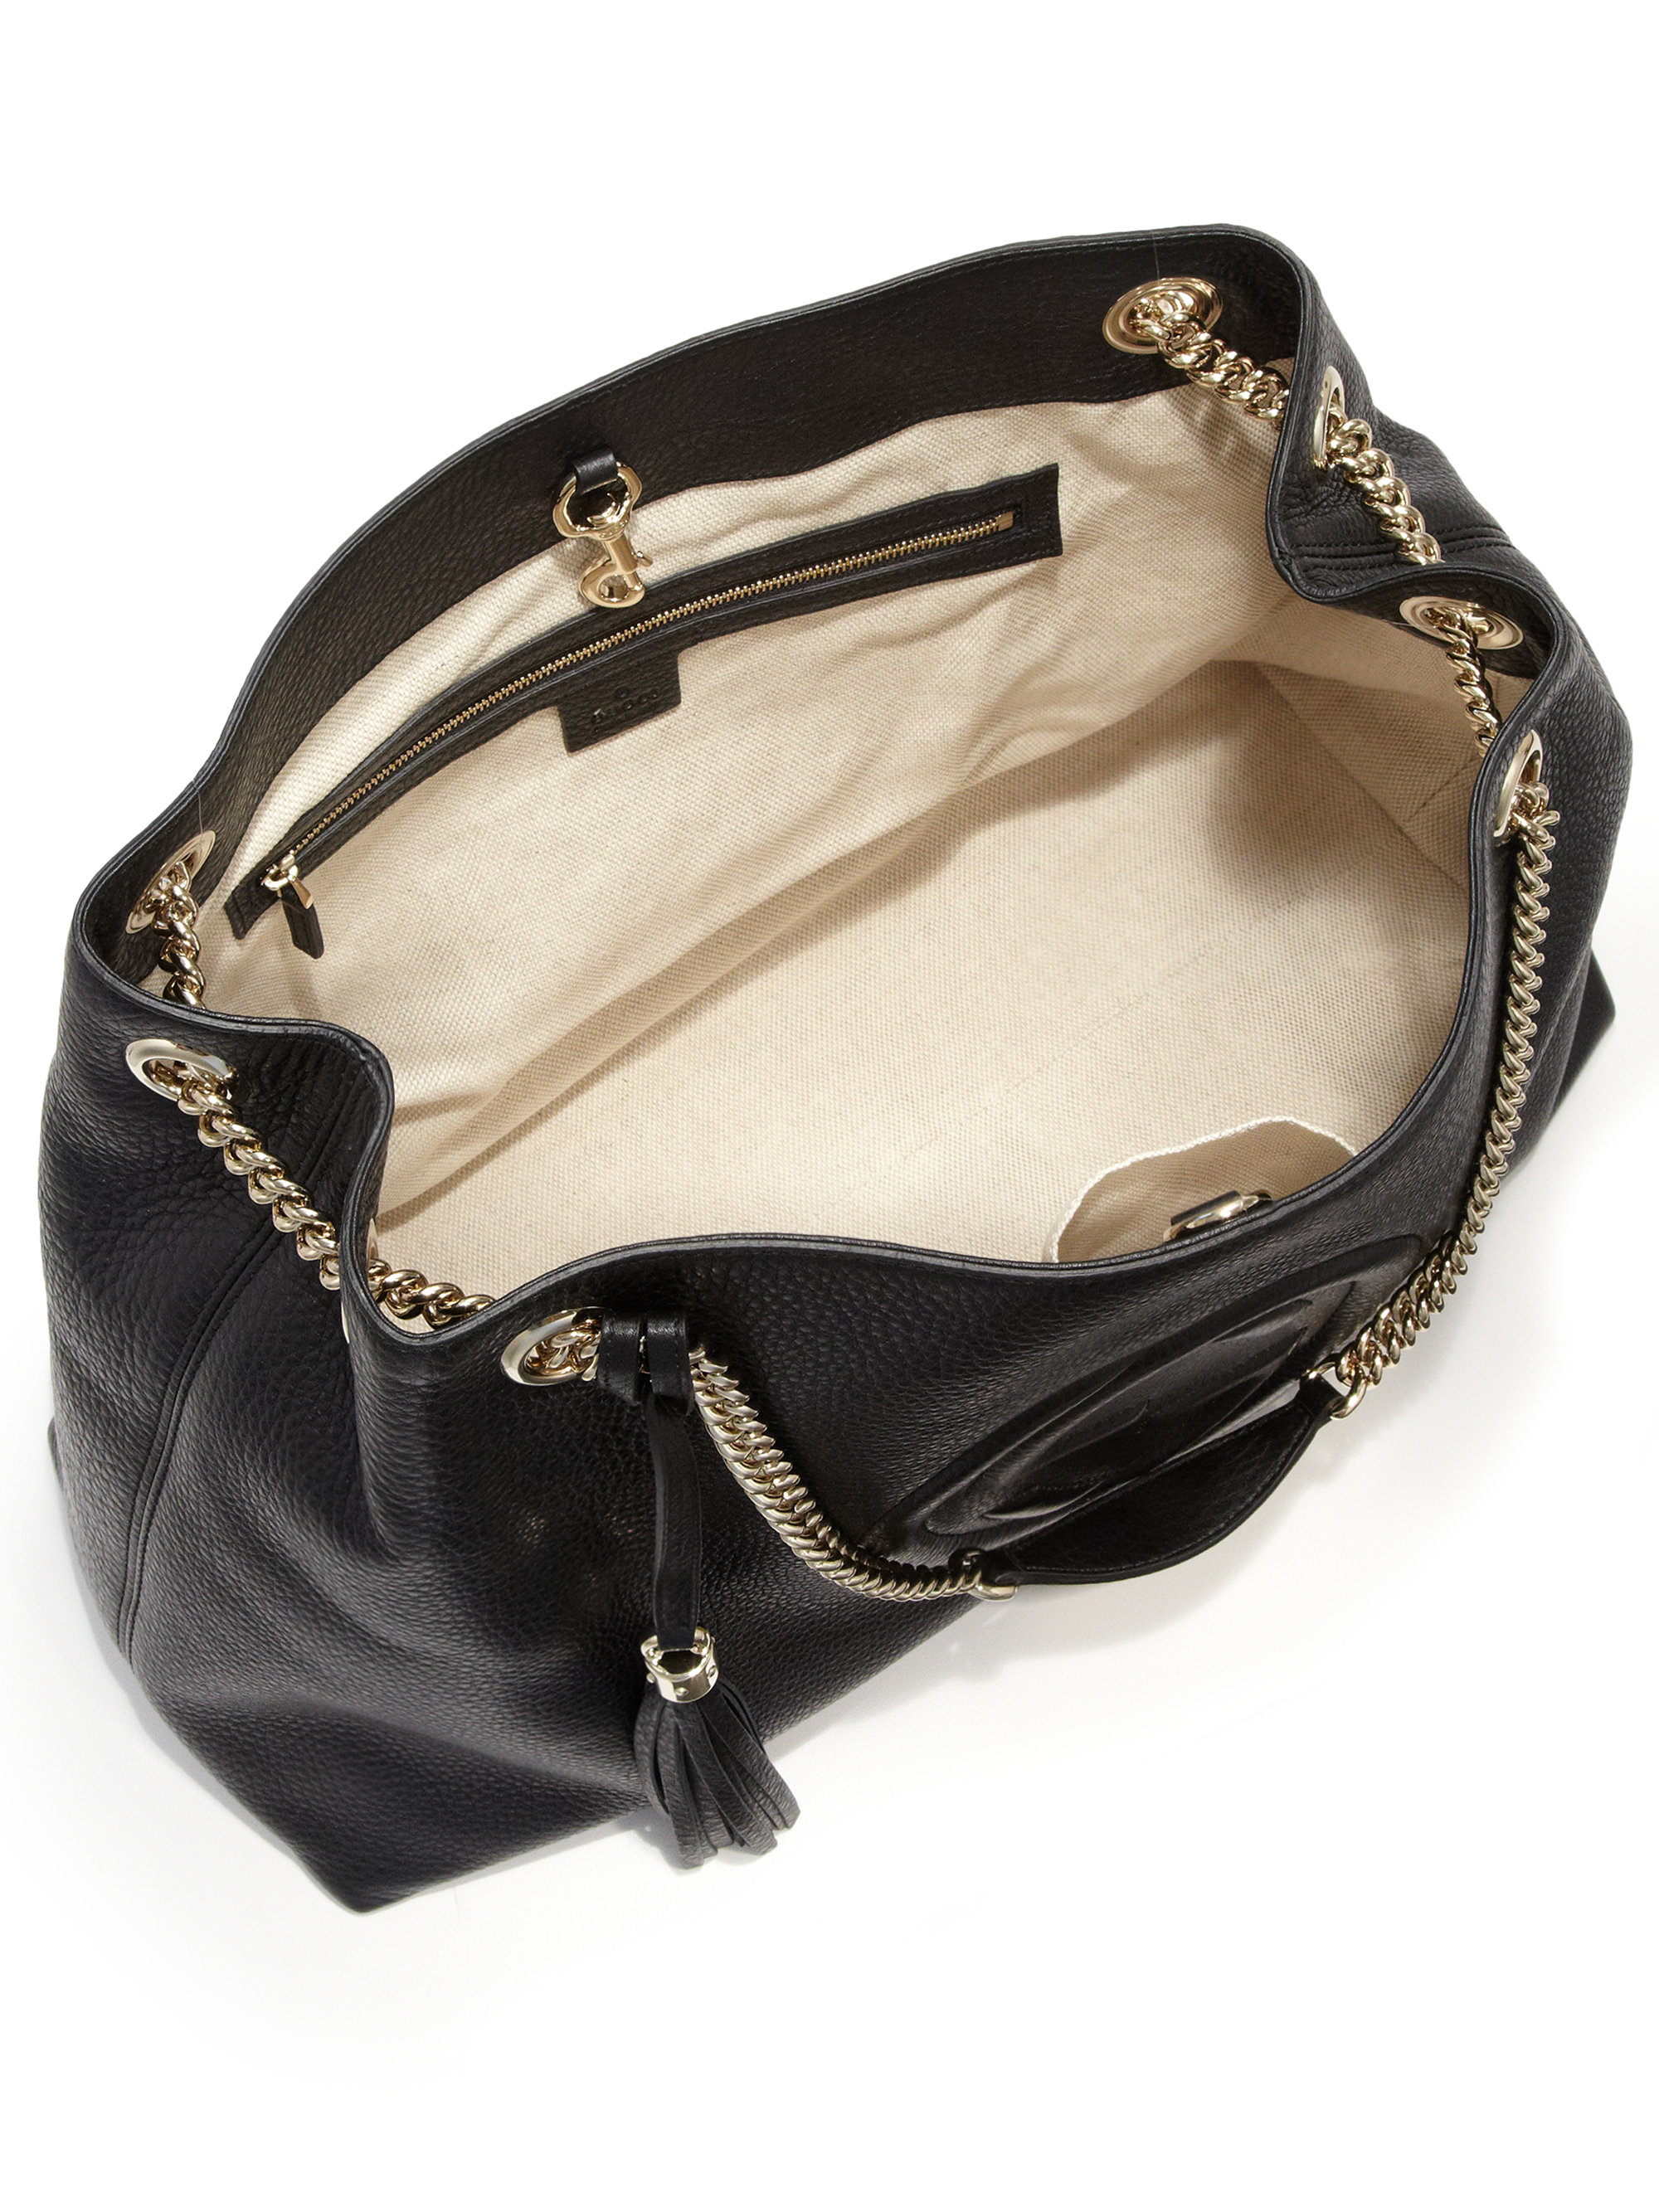 Lyst - Gucci Soho Leather Large Shoulder Bag in Black